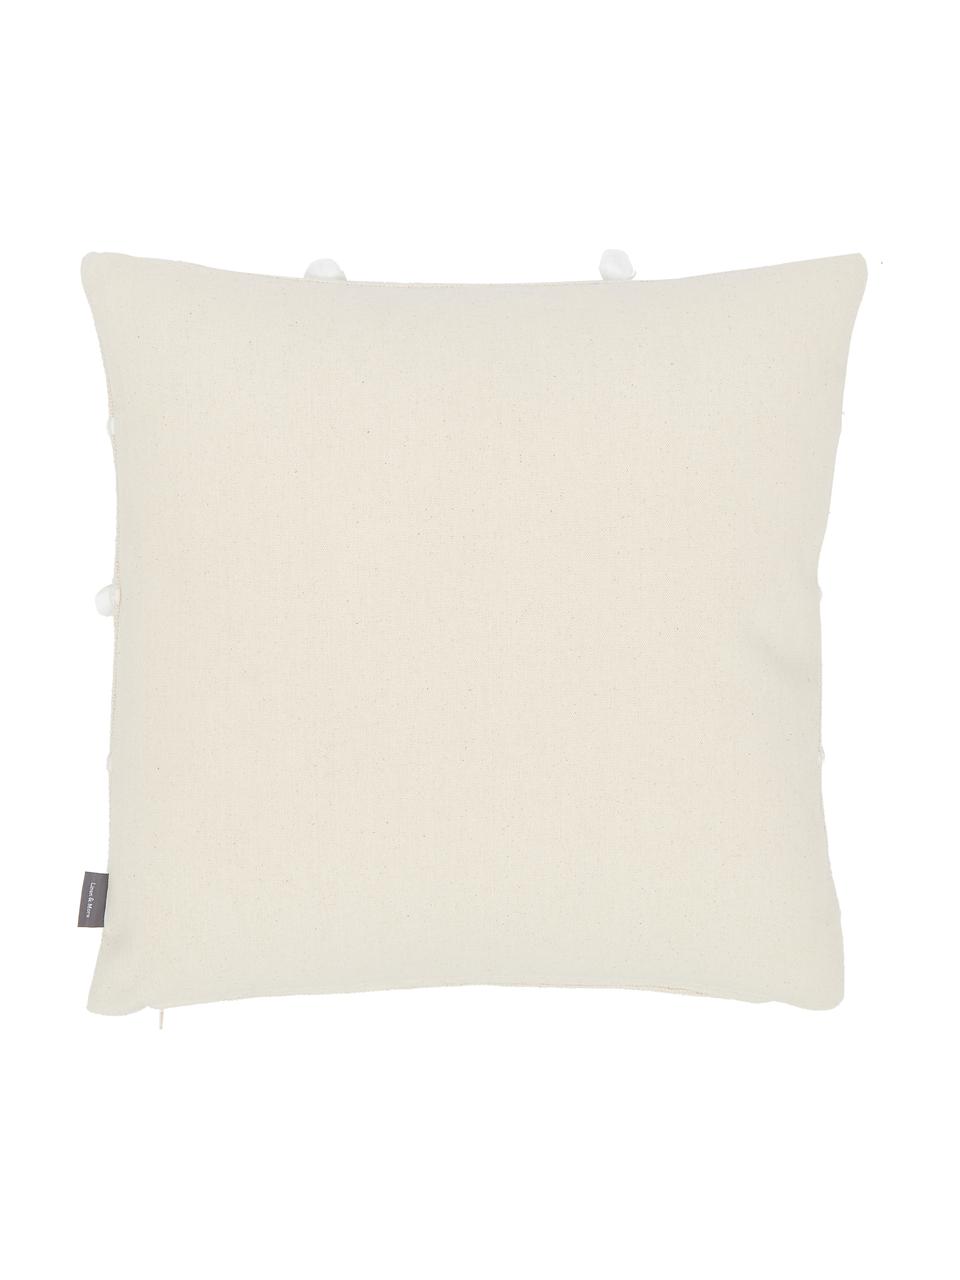 Cuscino con decori e imbottitura Bubble, Rivestimento: 100% cotone, Bianco latteo, bianco, Larg. 45 x Lung. 45 cm